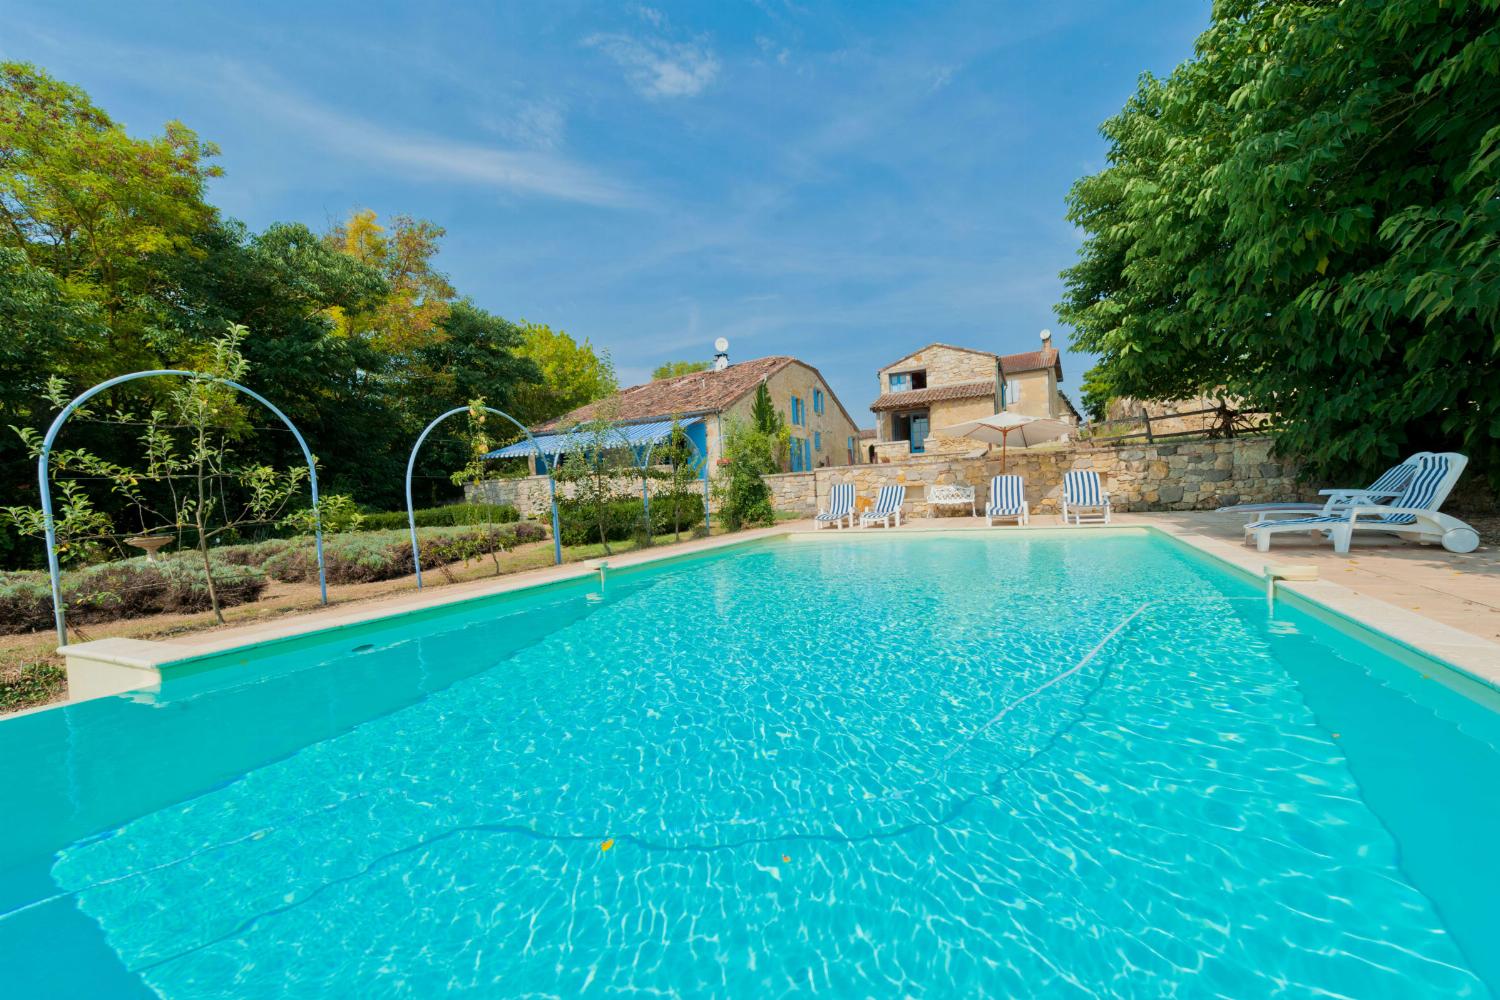 Location de vacances dans le Gers avec piscine privée à débordement